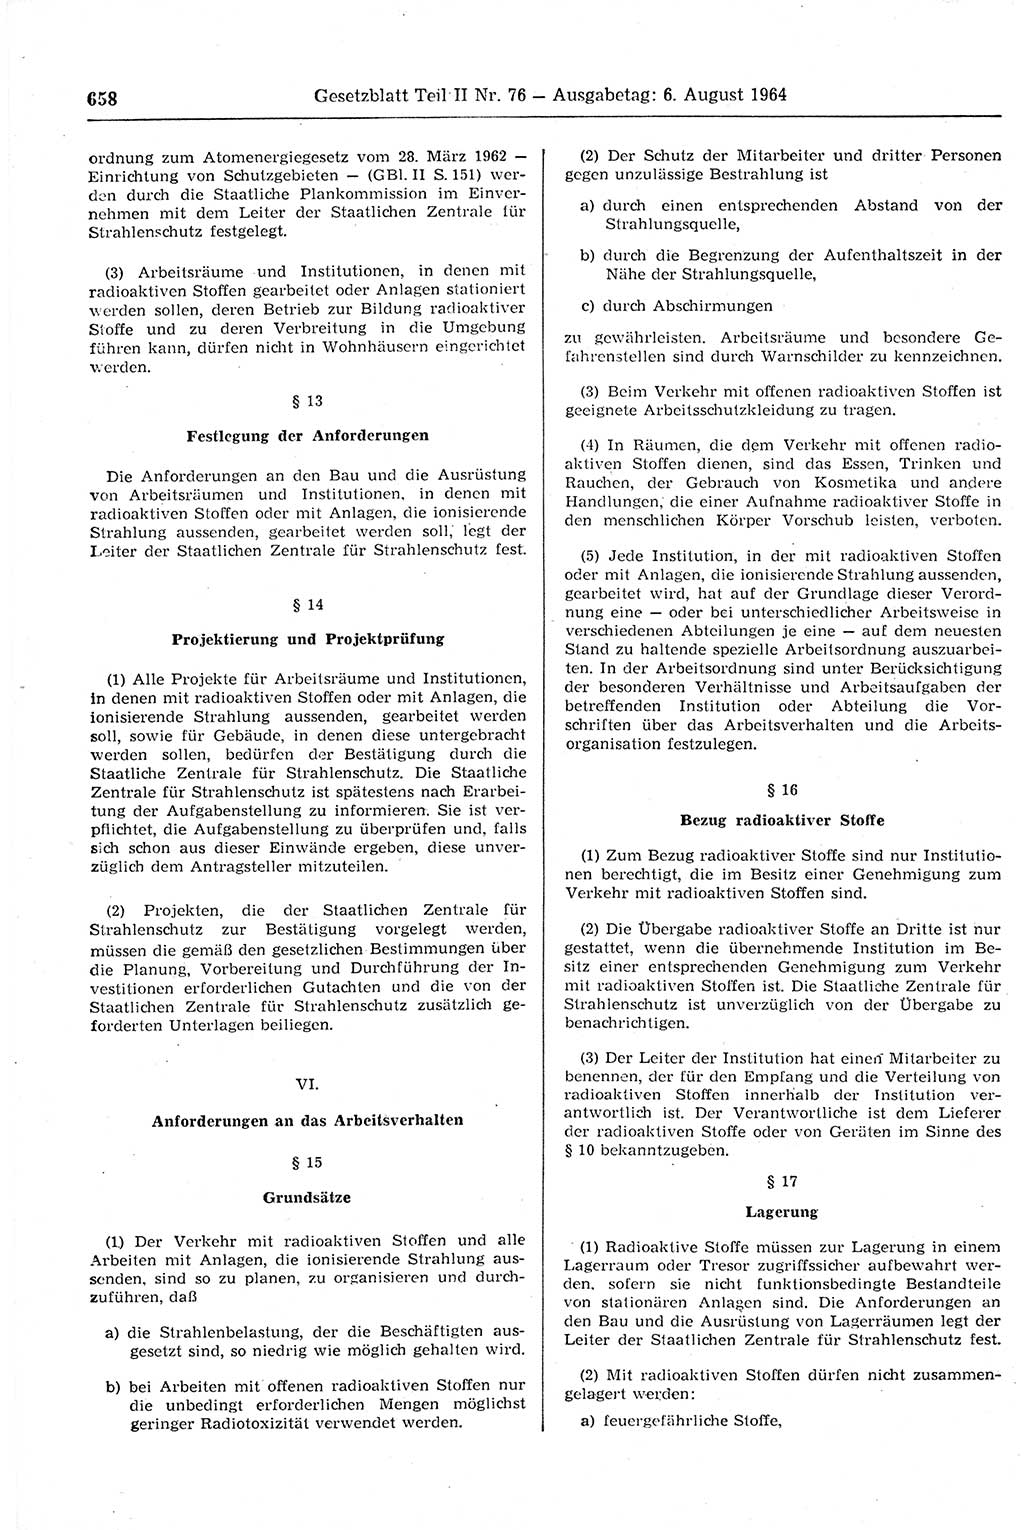 Gesetzblatt (GBl.) der Deutschen Demokratischen Republik (DDR) Teil ⅠⅠ 1964, Seite 658 (GBl. DDR ⅠⅠ 1964, S. 658)